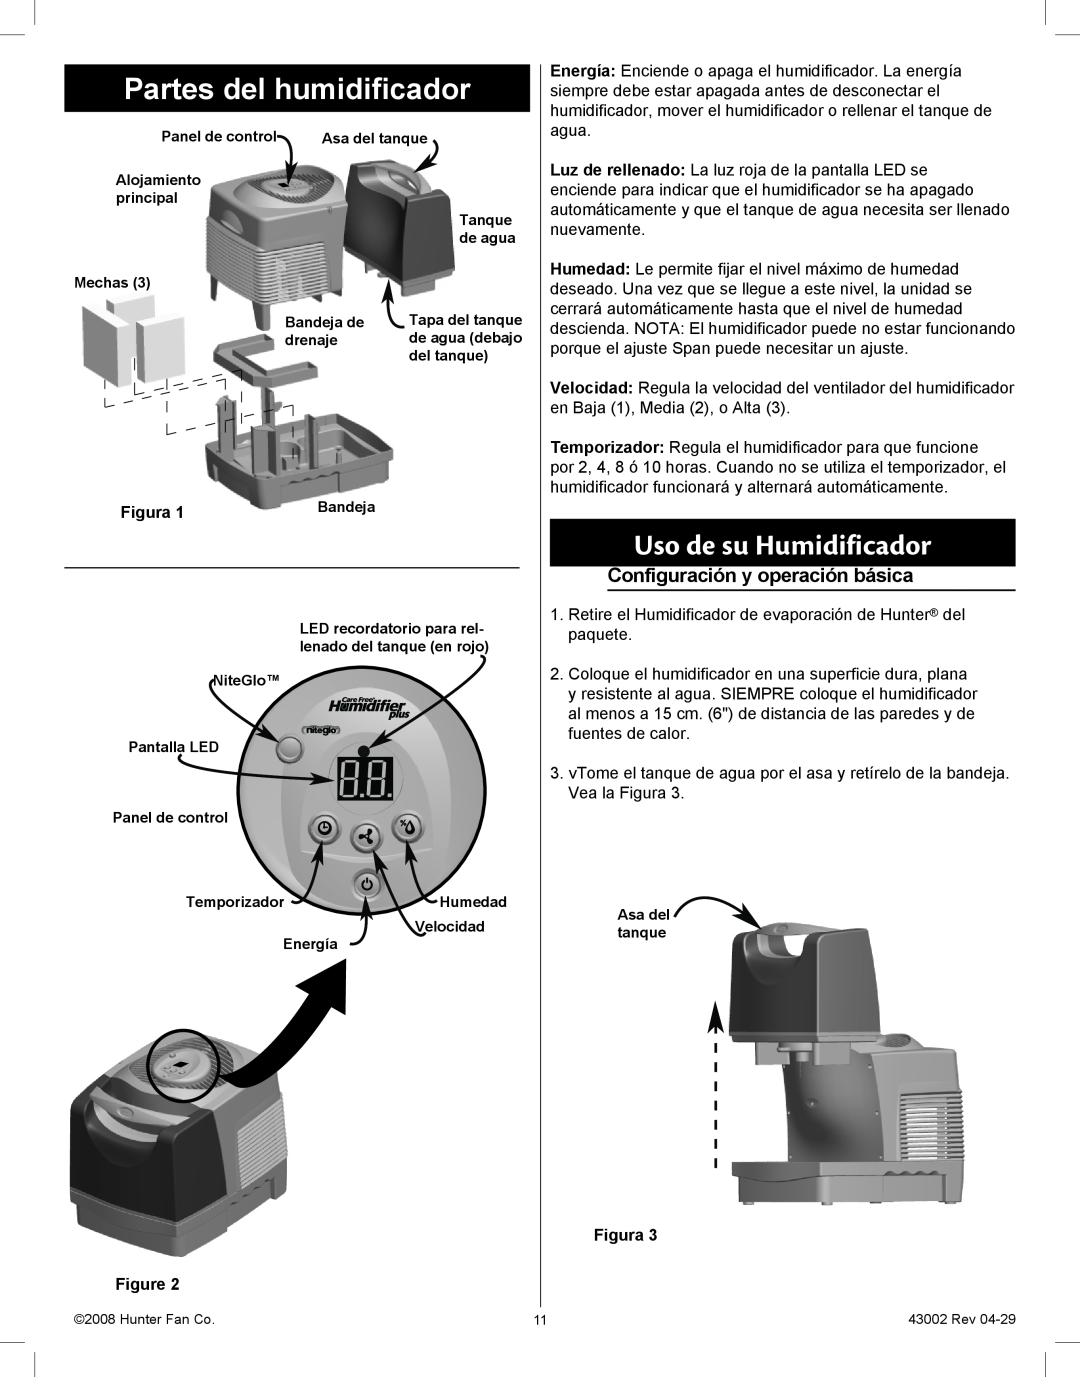 Hunter Fan 37407 manual Partes del humidificador, Uso de su Humidificador, Configuración y operación básica, Figura 